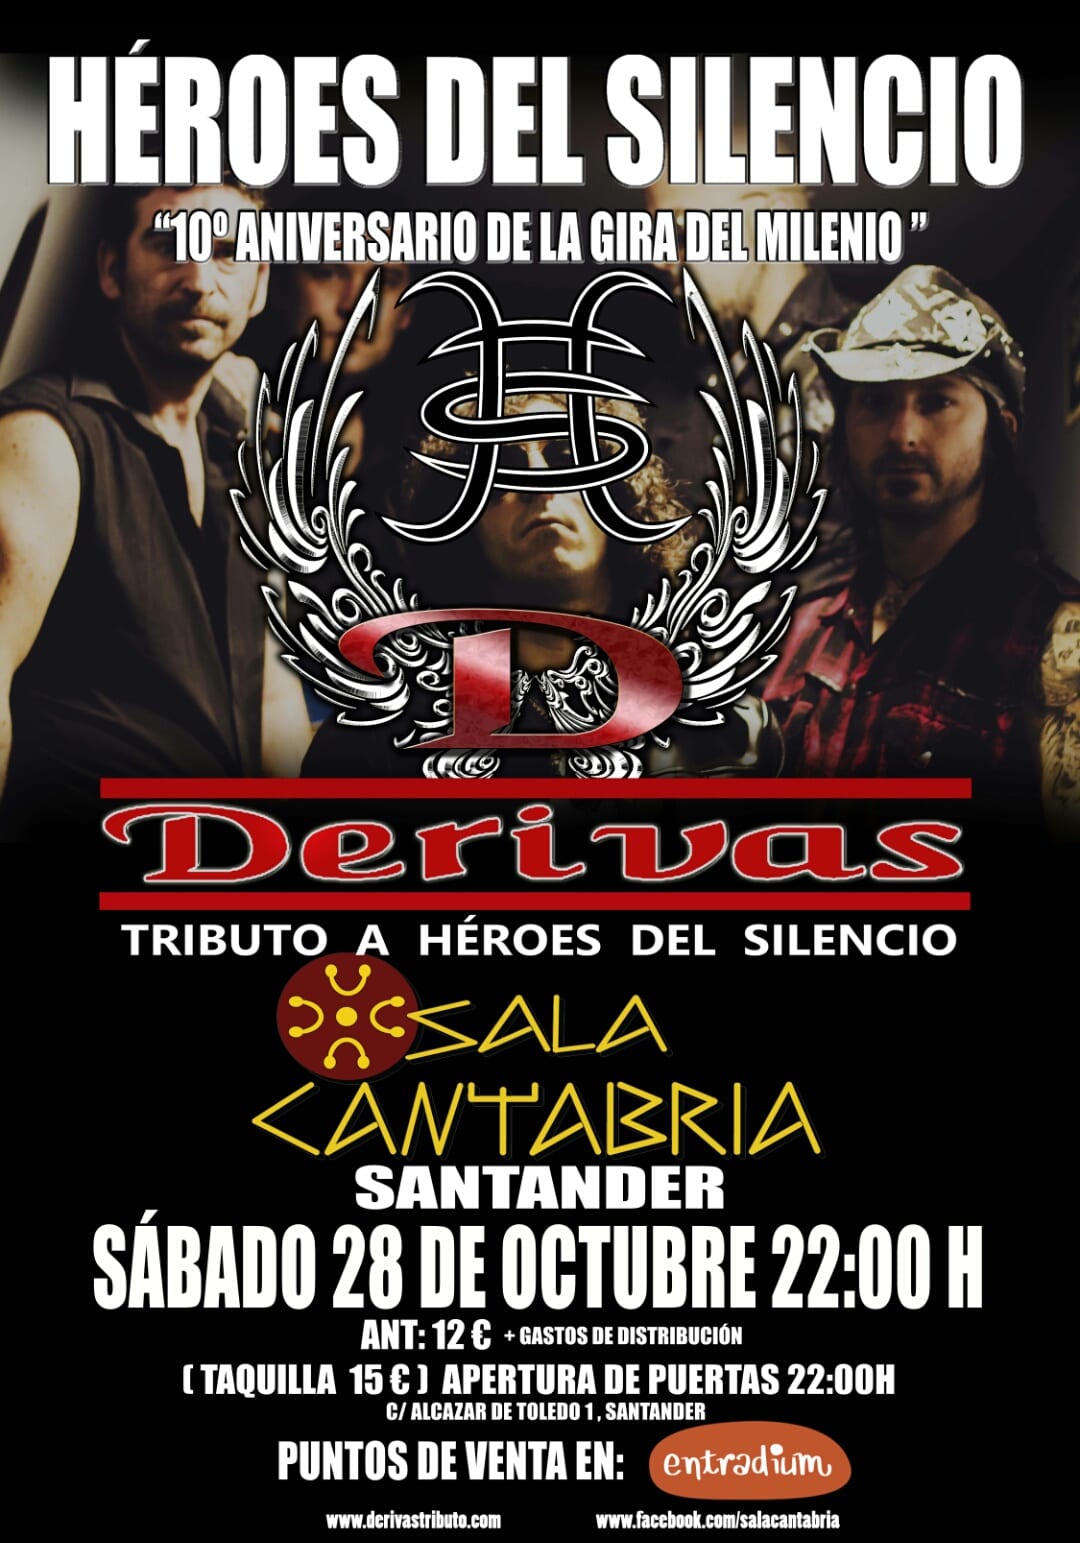 Sigue la gira española de DERIVAS: próxima parada Santander el sábado 28